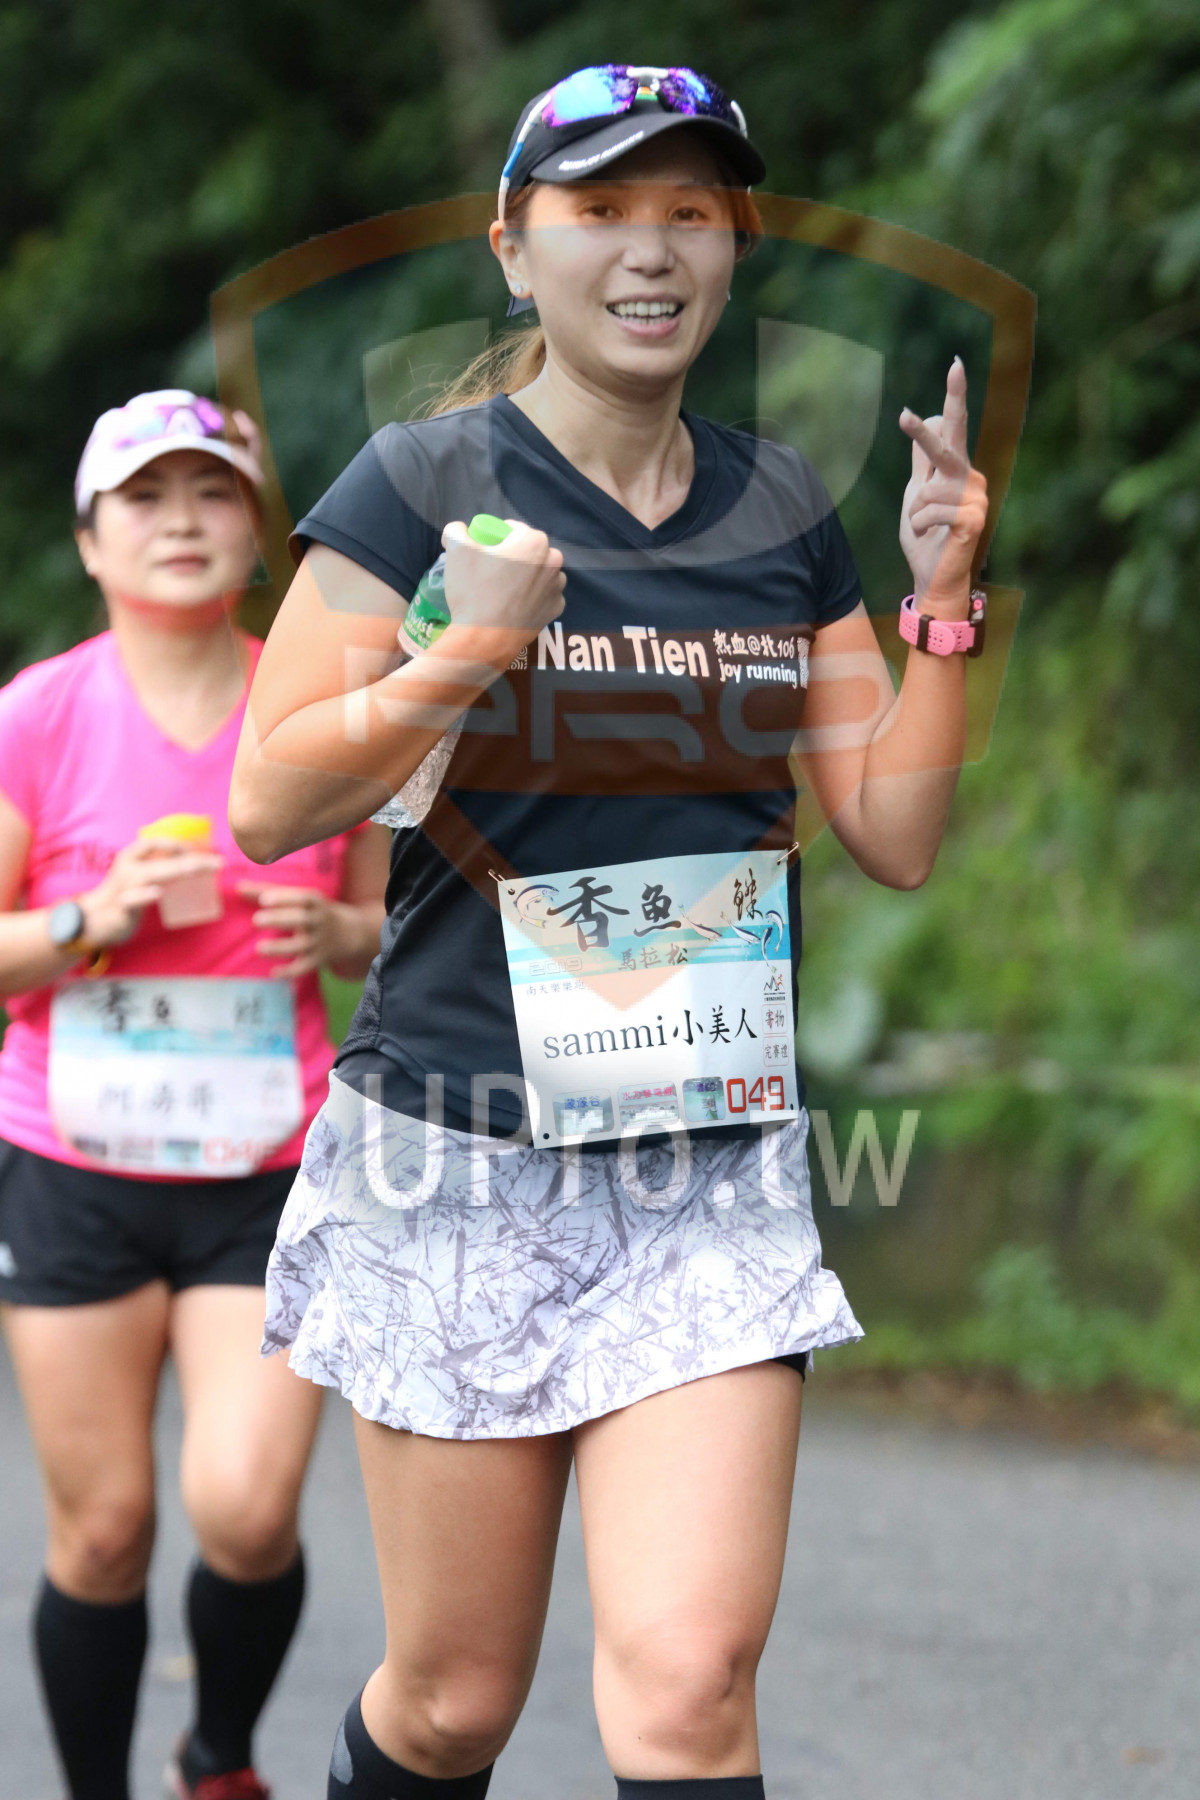 Nan Tien wial,@,joy running,sammi,|